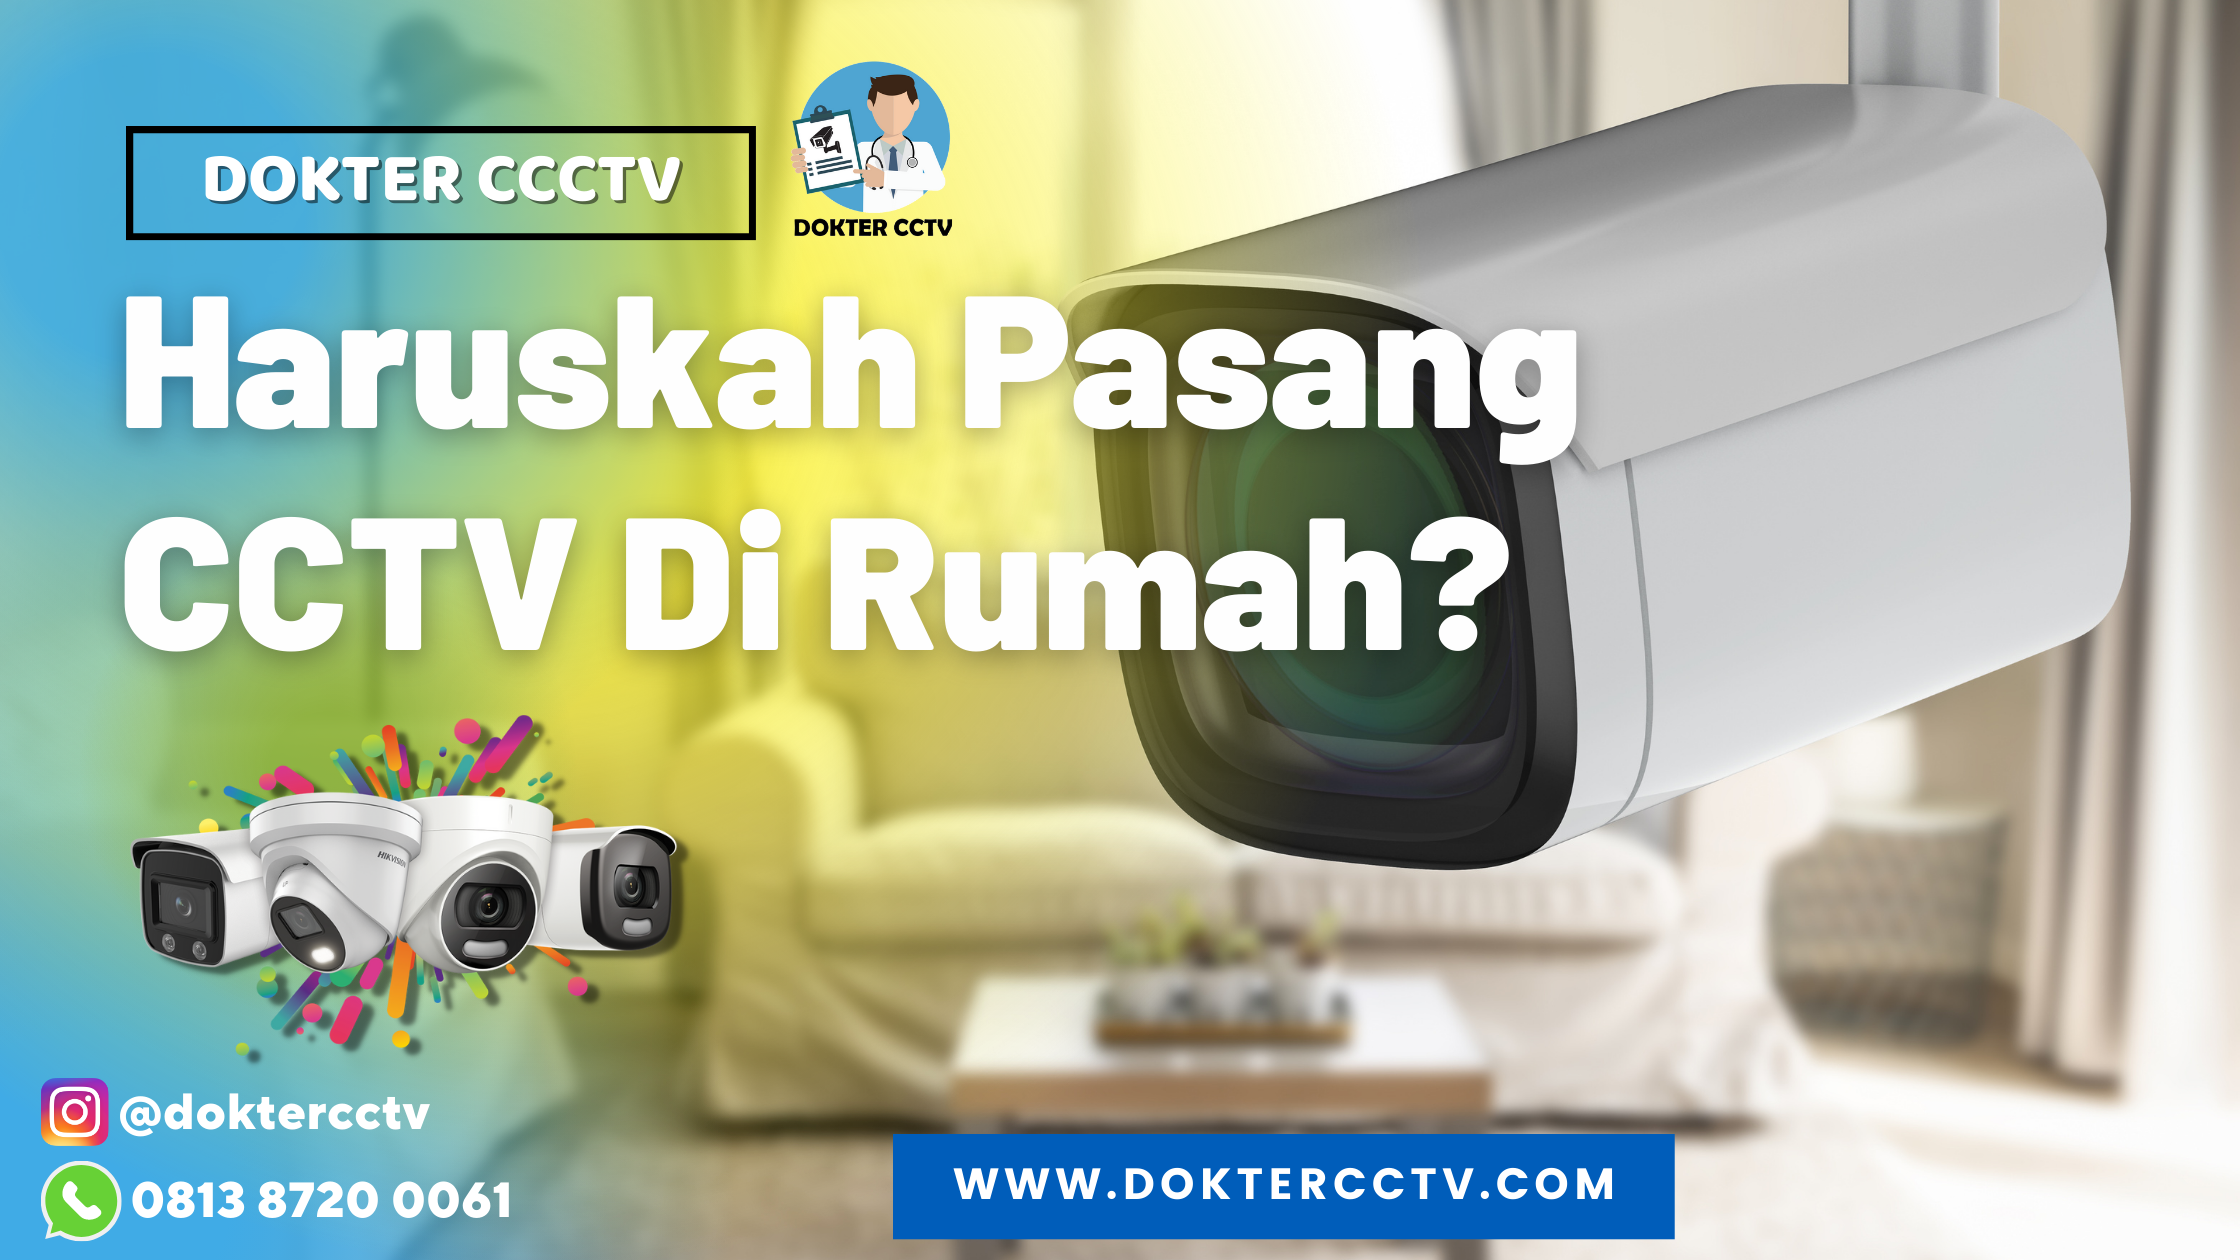 Haruskah Pasang CCTV Di Rumah?